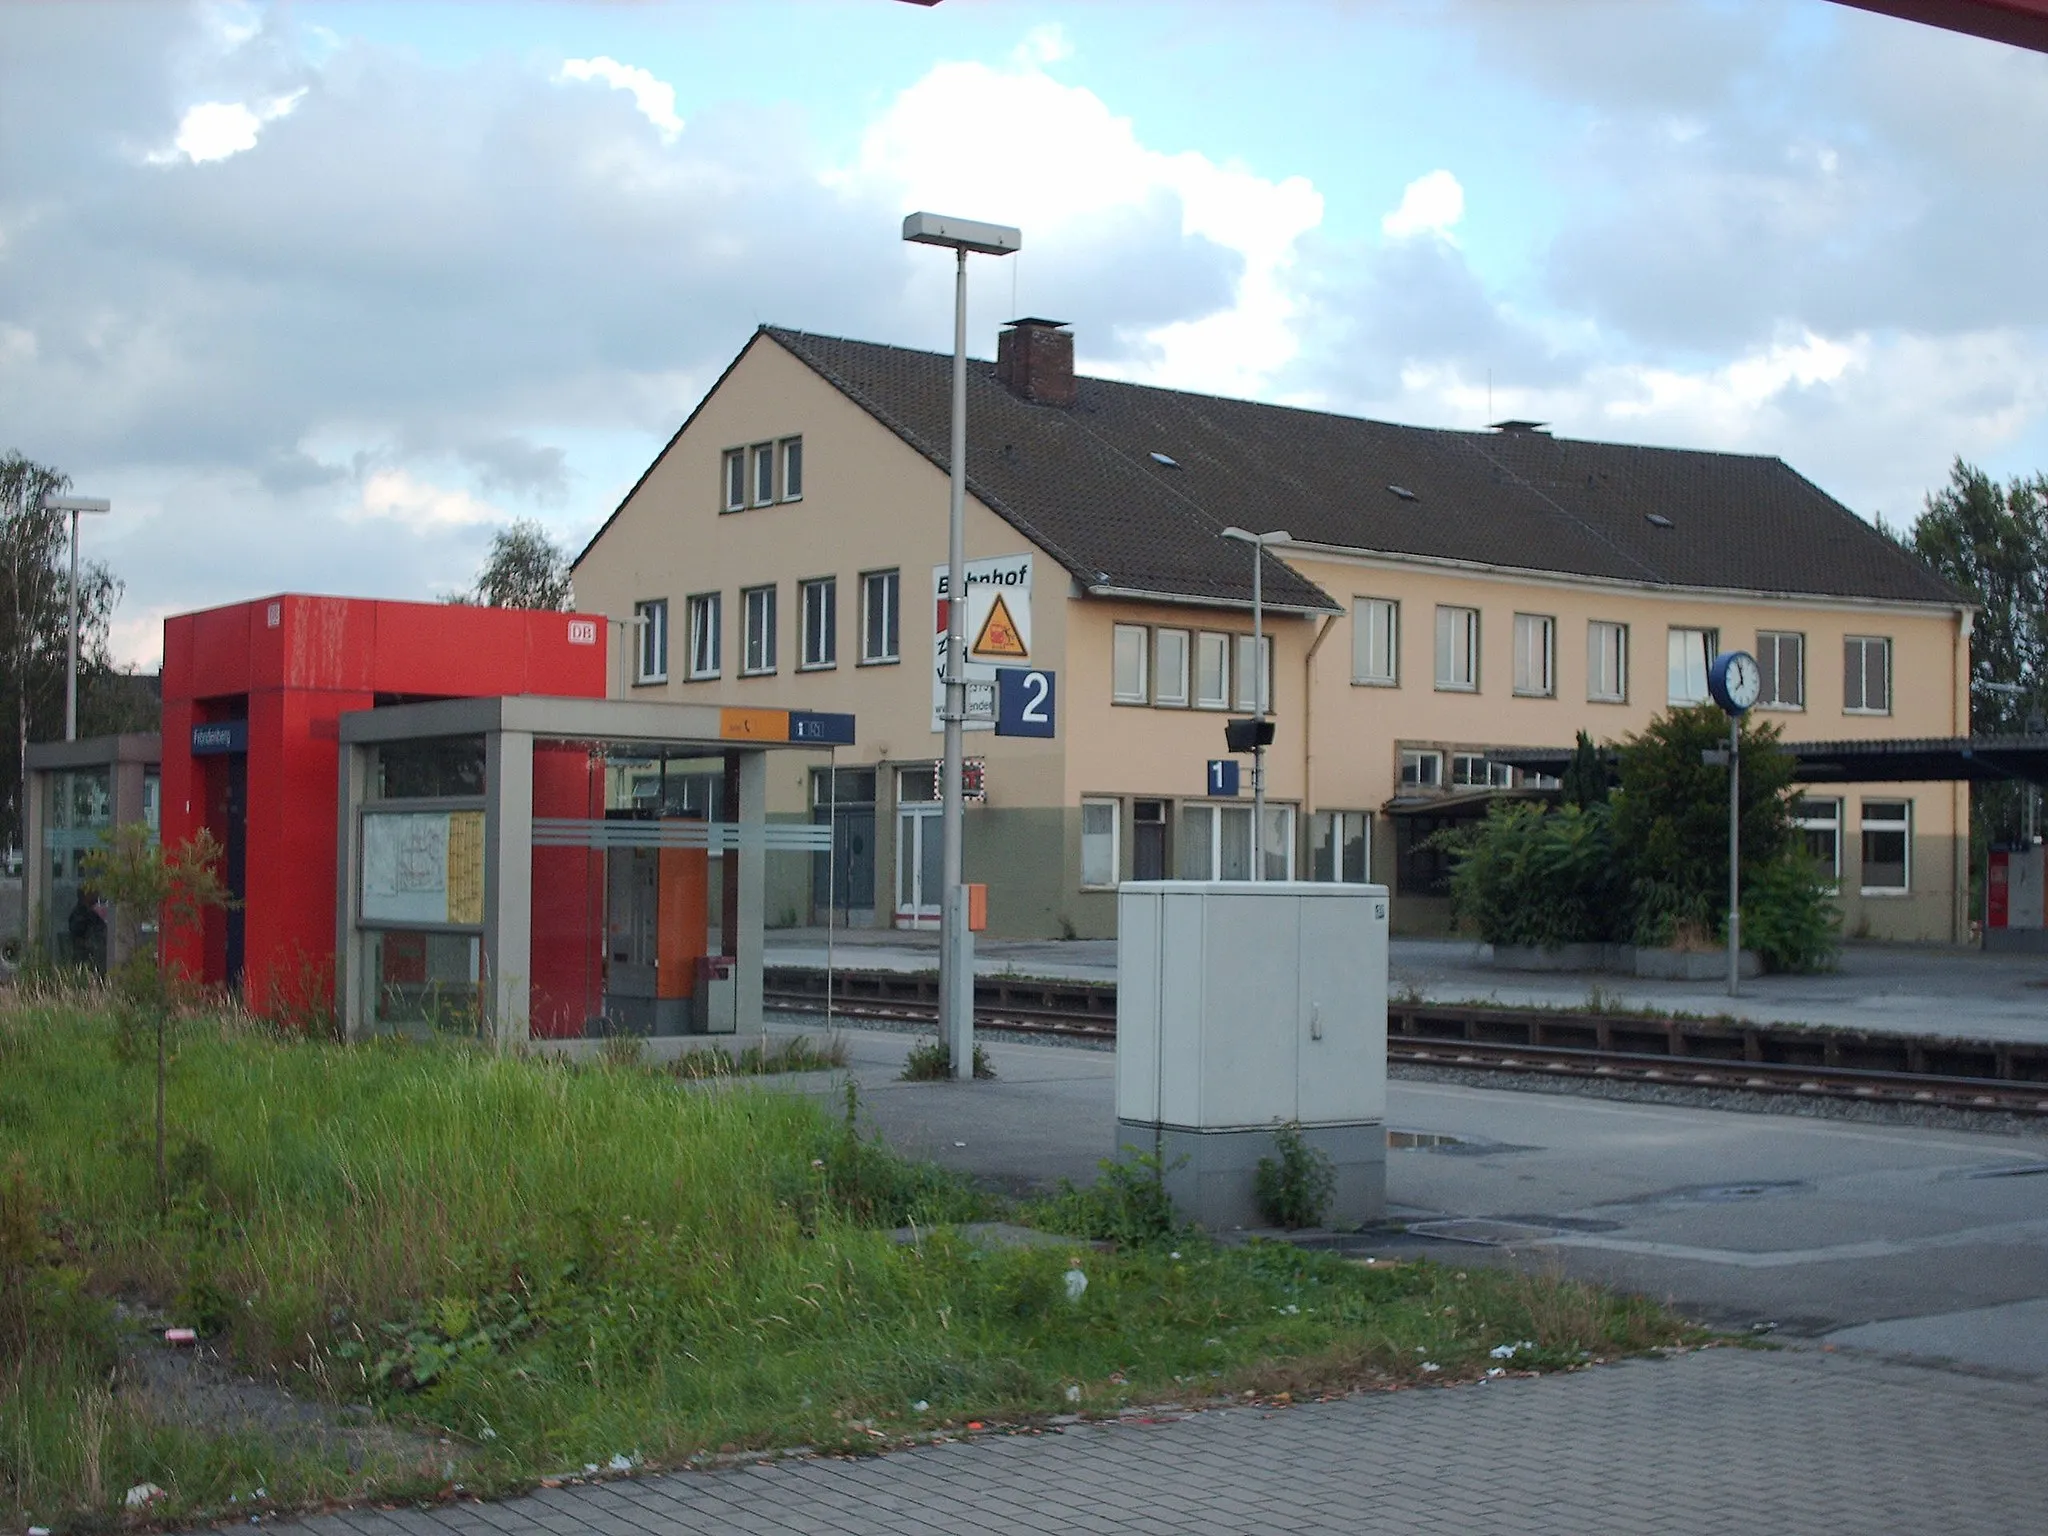 Photo showing: Fröndenberg station, Fröndenberg, Germany